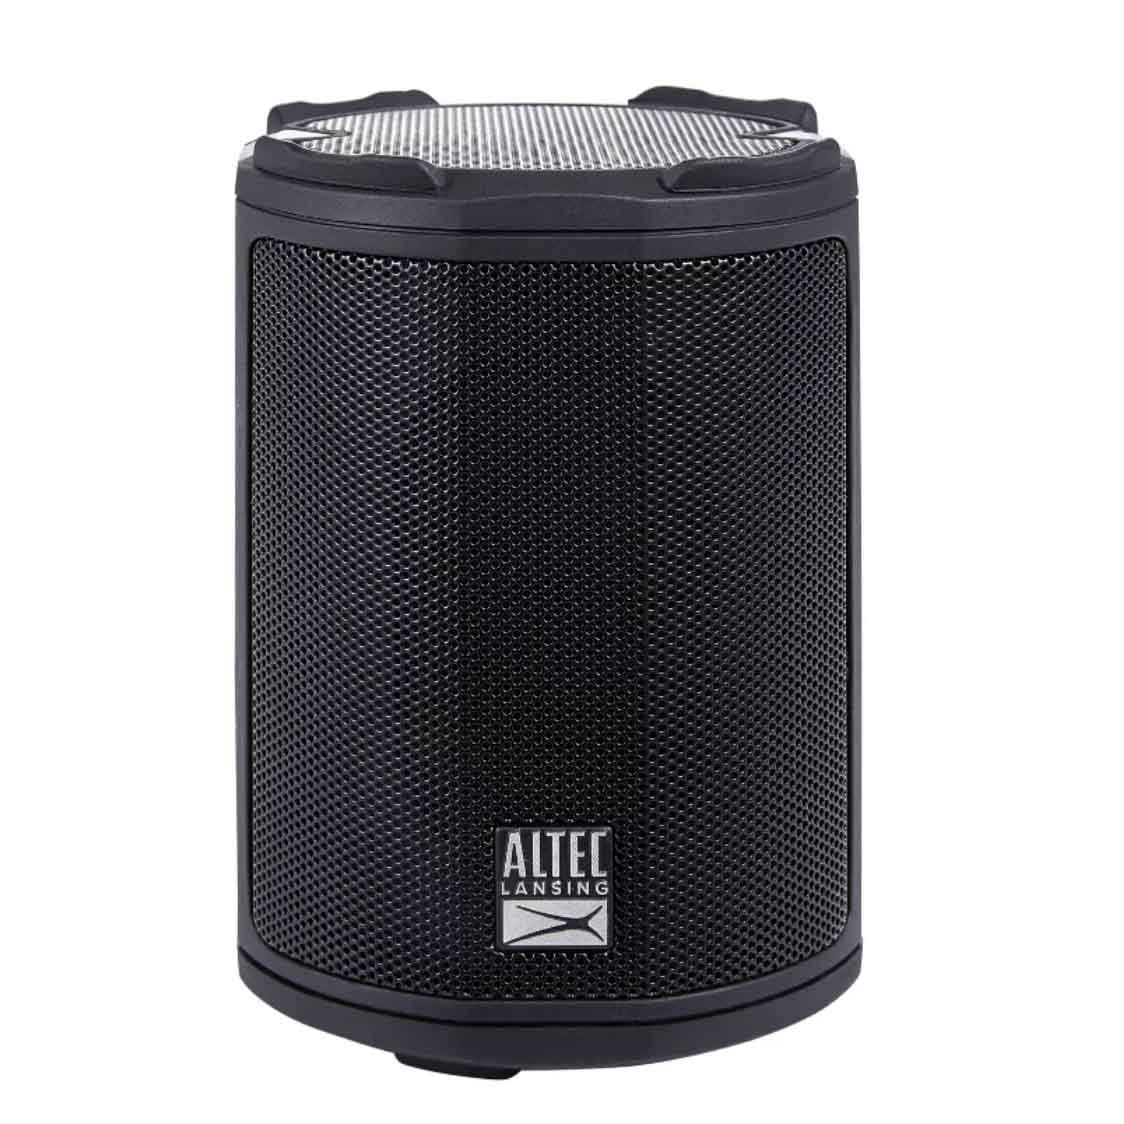 Black cylinder shape speaker